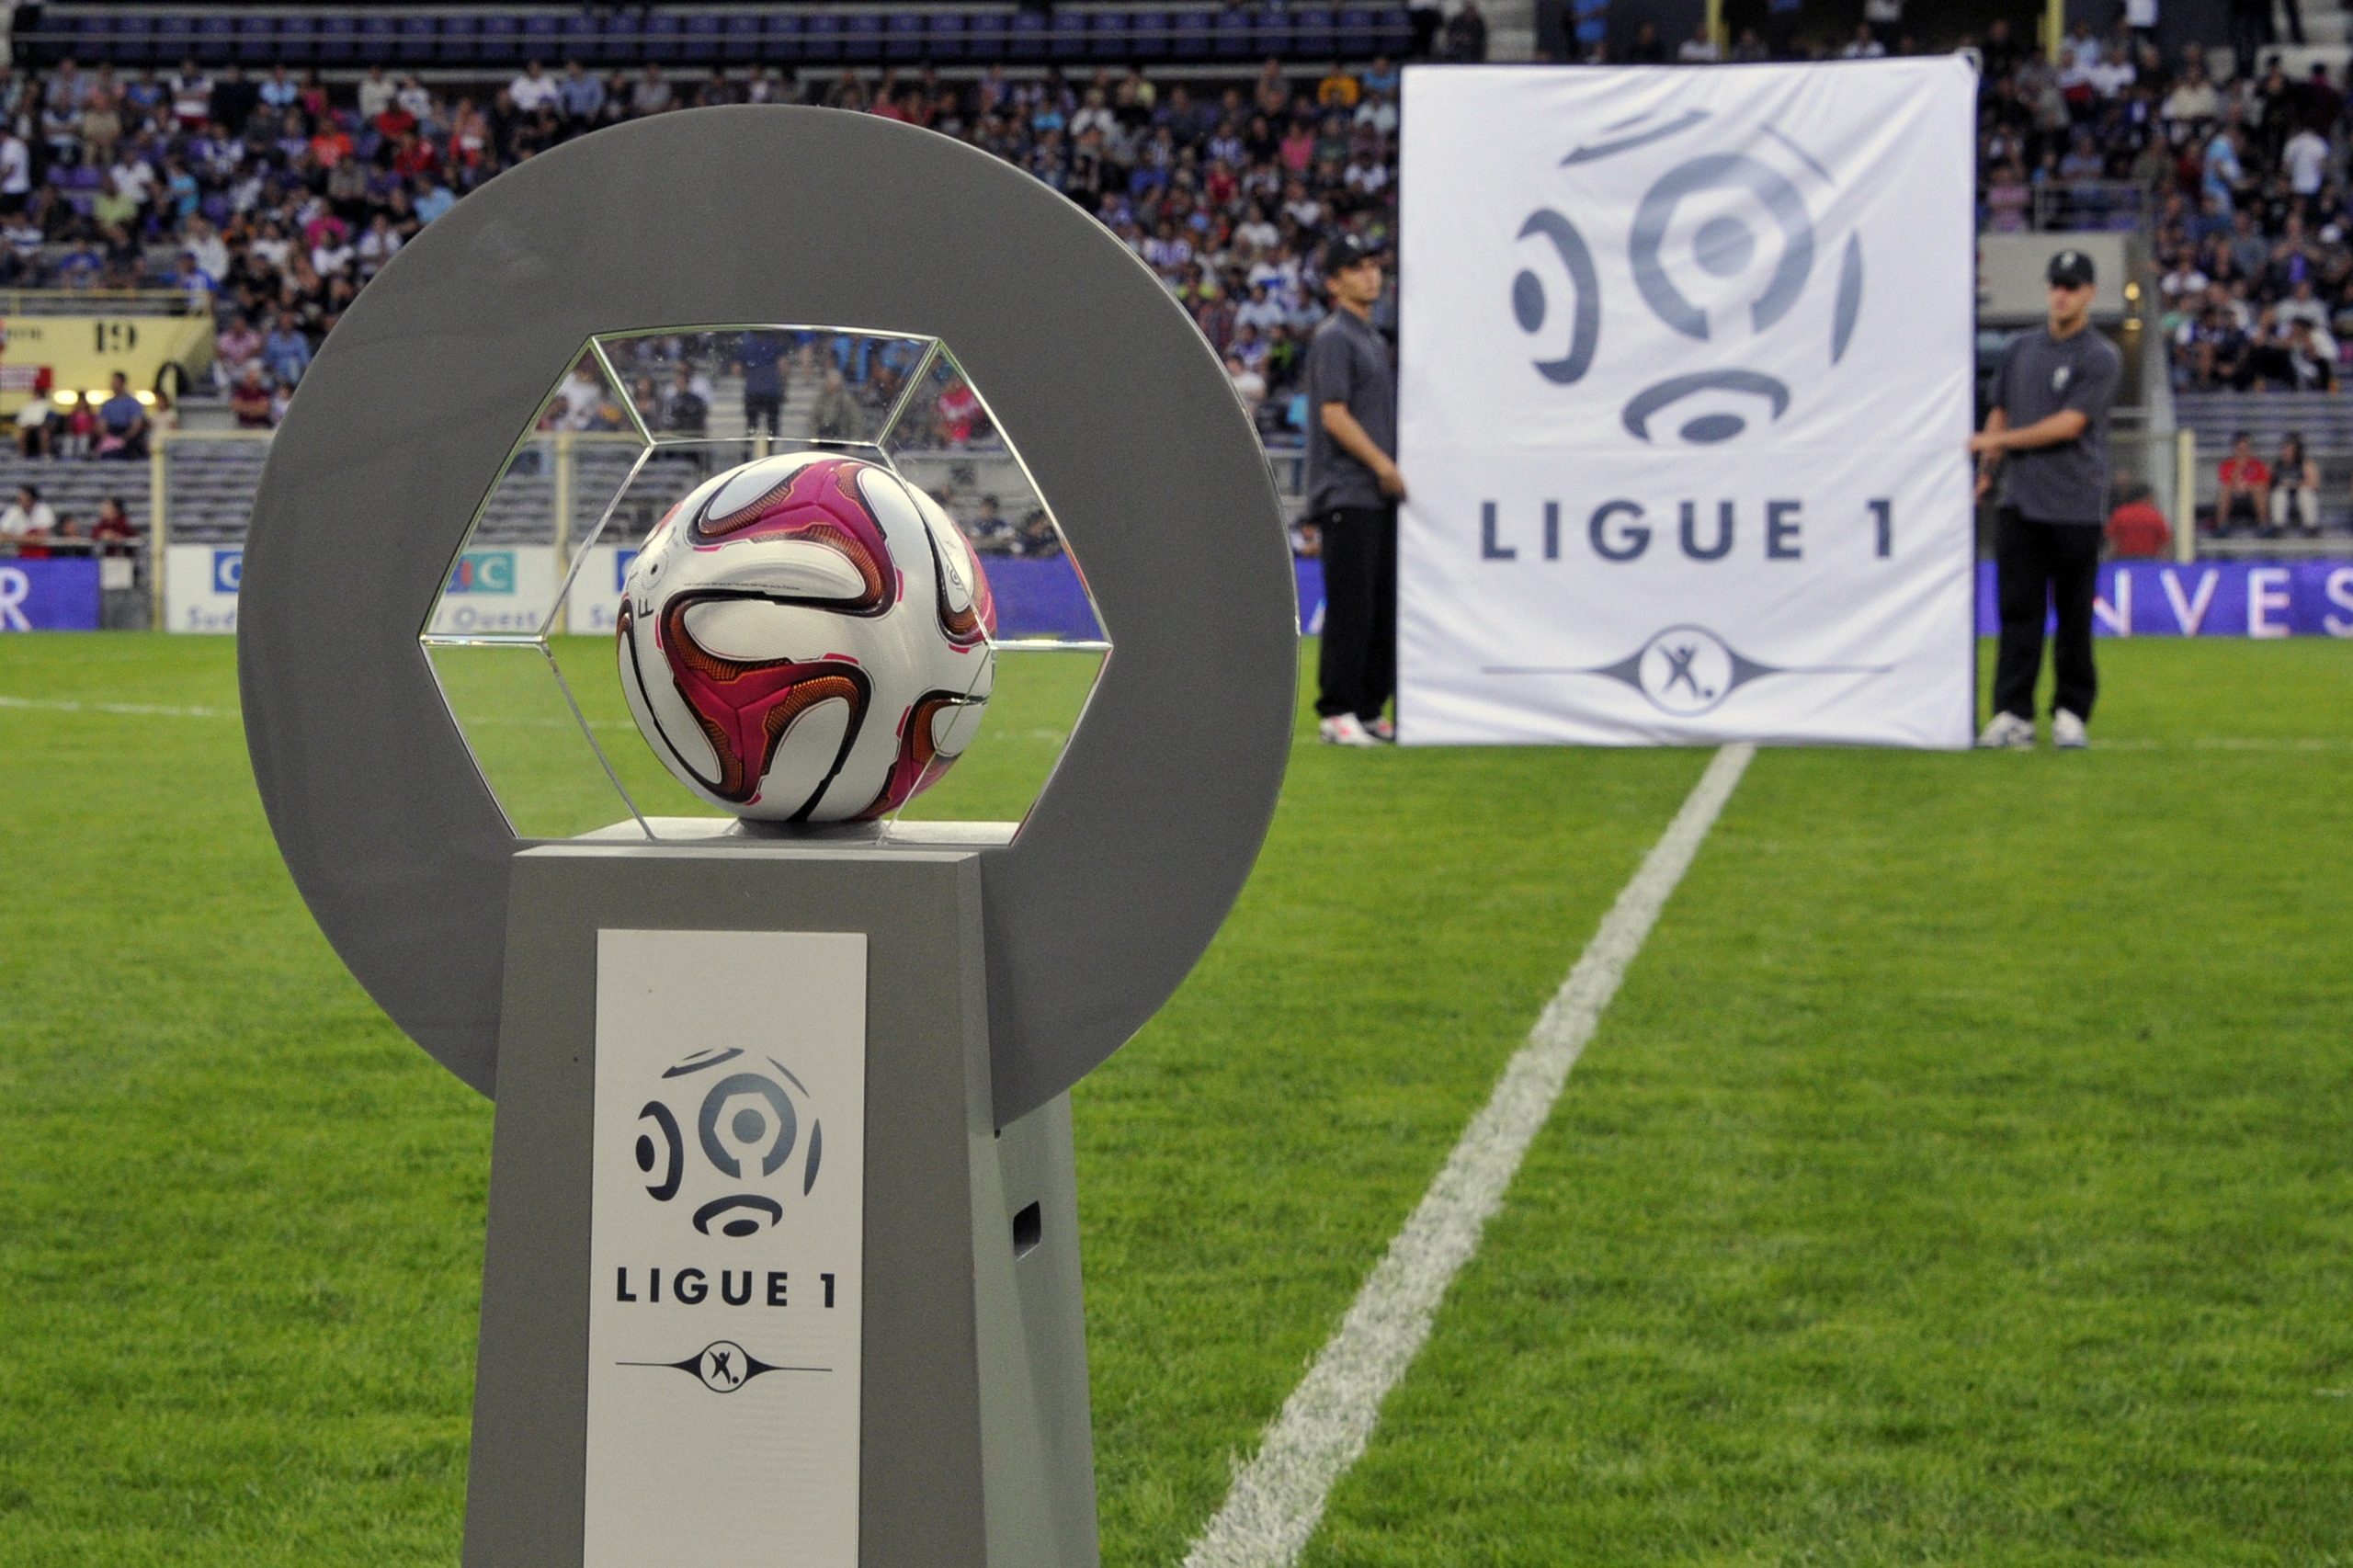 La Ligue1 non riprenderà più: stop al campionato